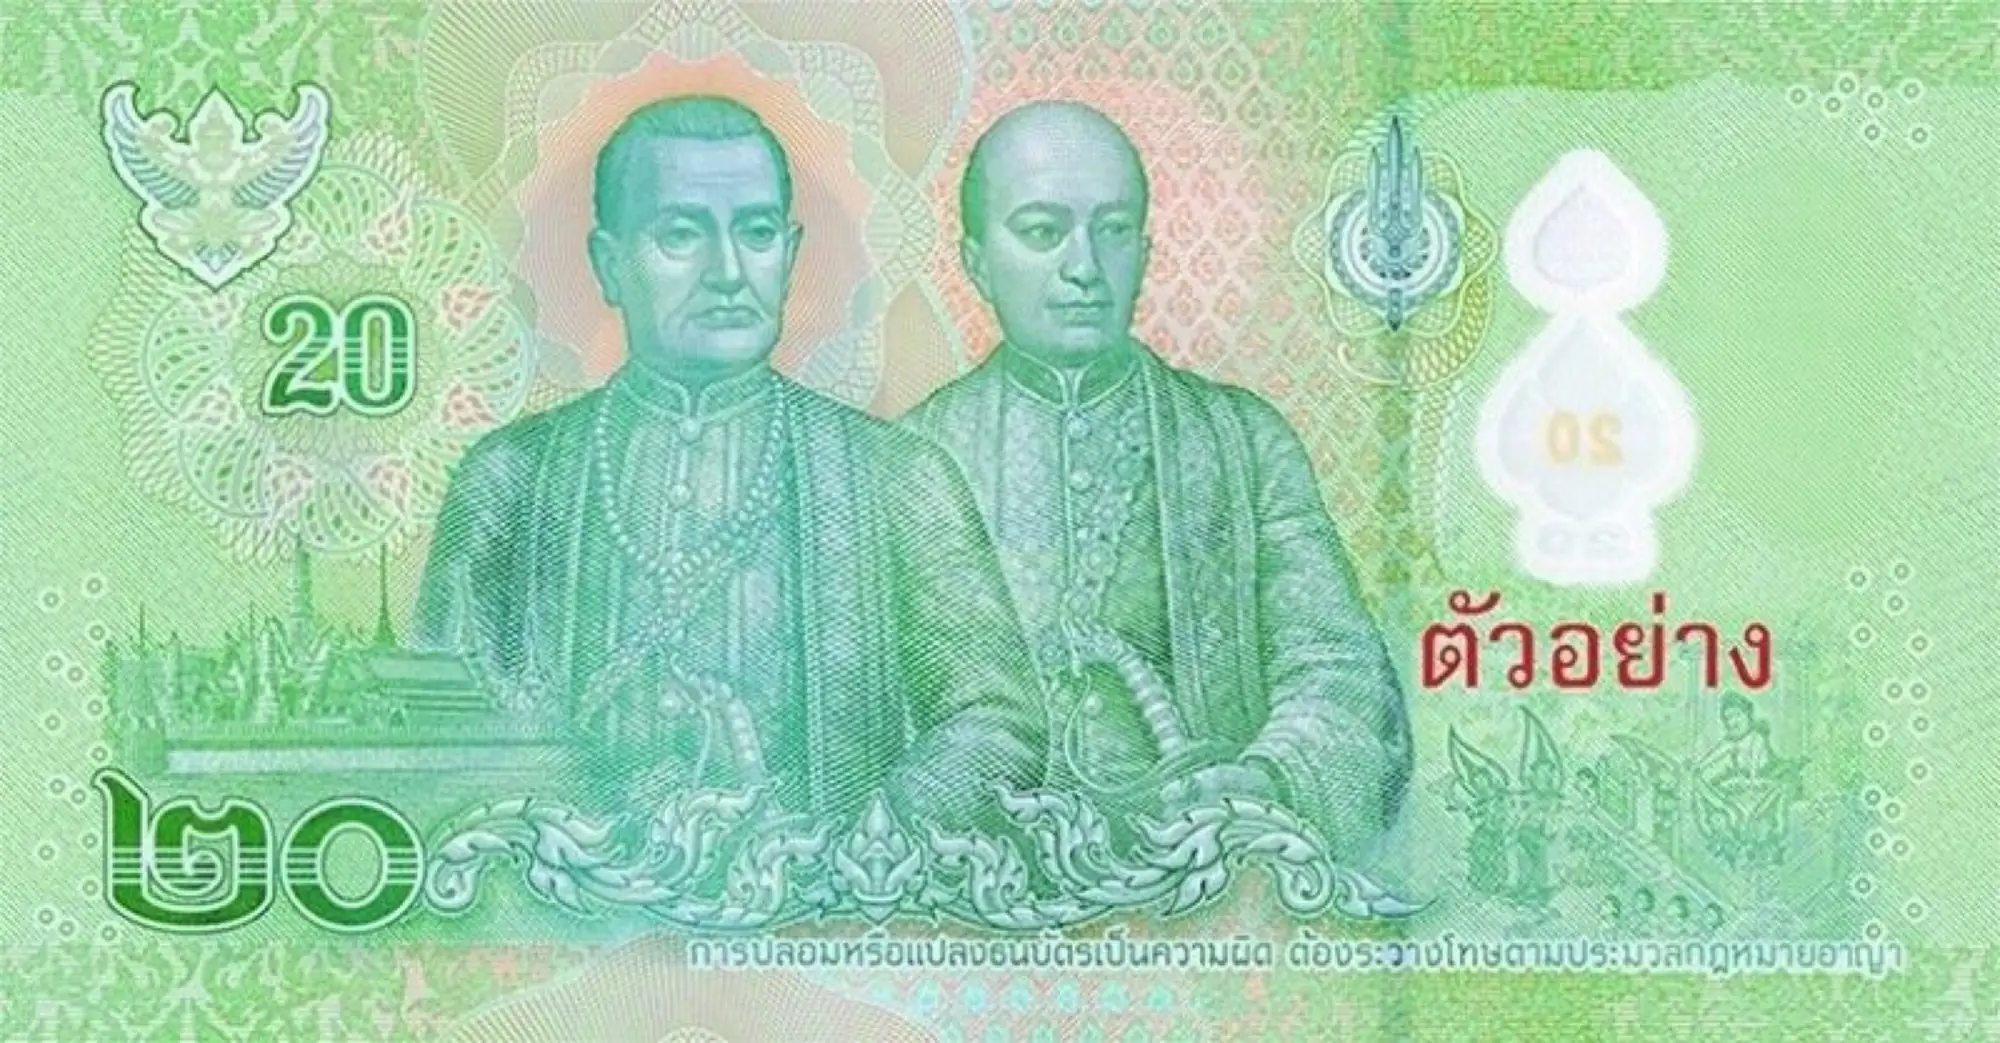 塑胶做的！新版20泰铢钞票亮相 预计3月开放兑换